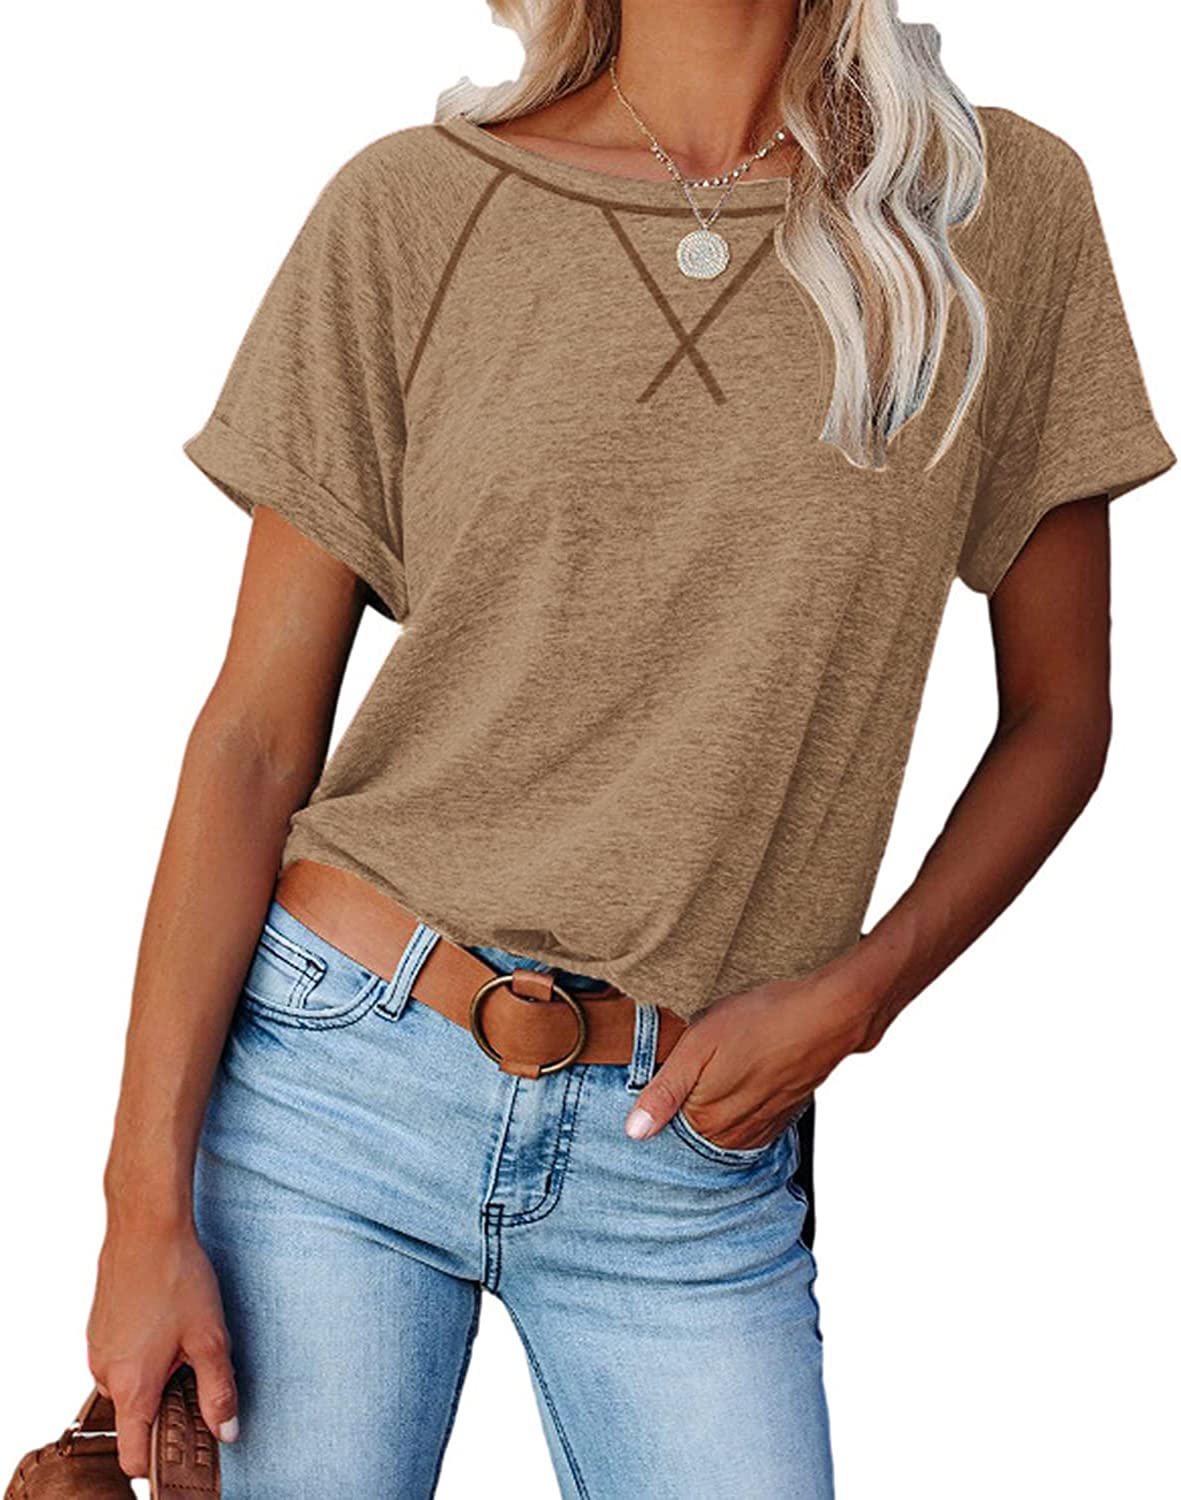 ayreus Women's Casual Short Sleeve T Shirts Crewneck Raglan Tees Side Summ | eBay